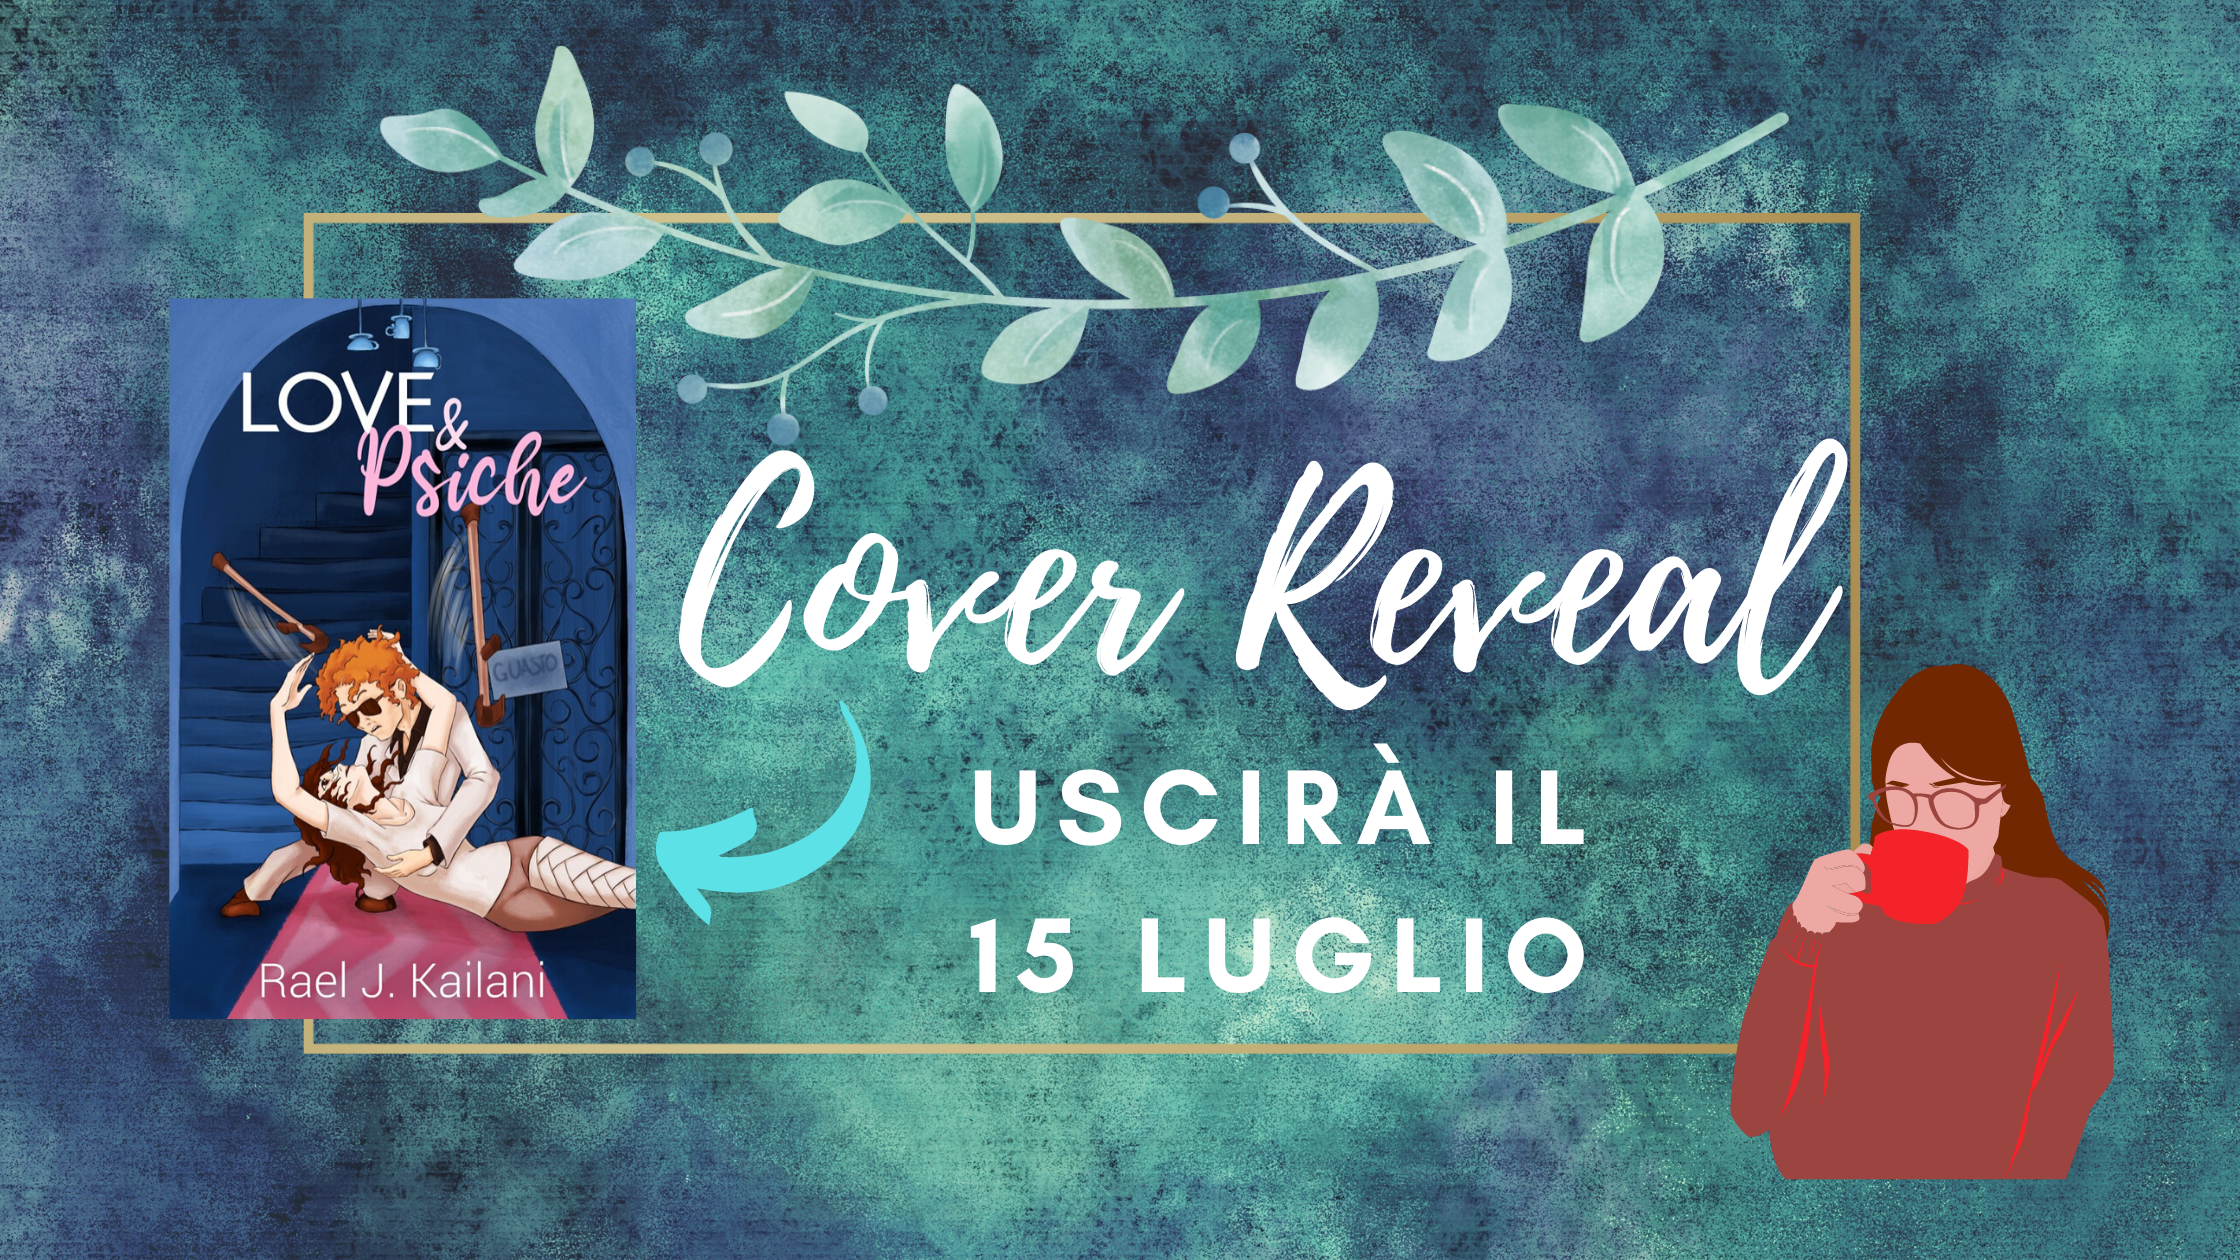 Cover Reveal – “TUTTI I COLORI DELL’ANIMA” Vol 2 di Giusy Viro